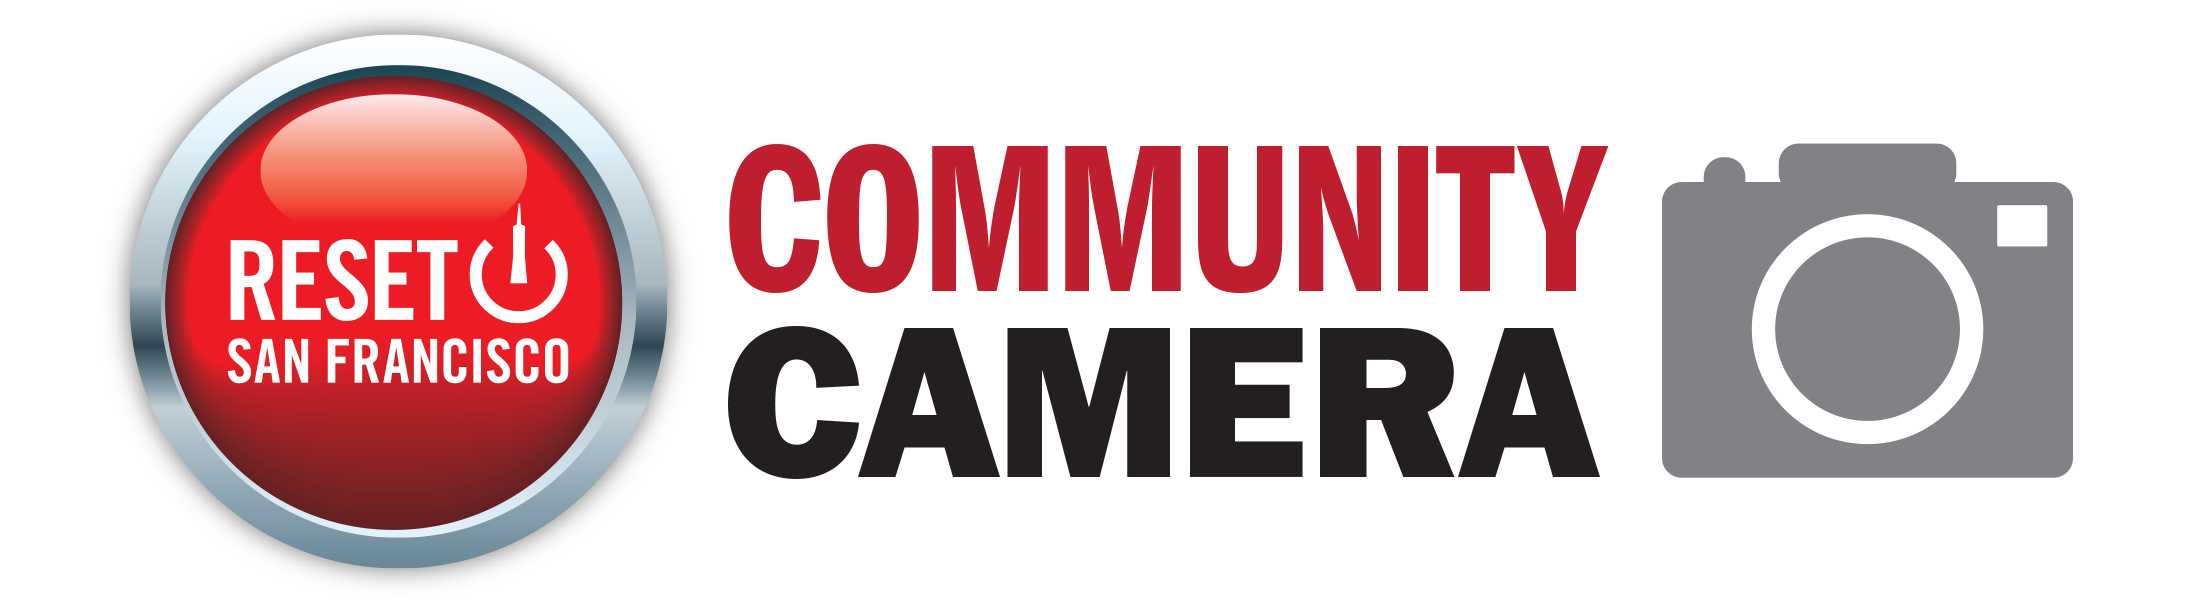 Community Camera via Reset SF